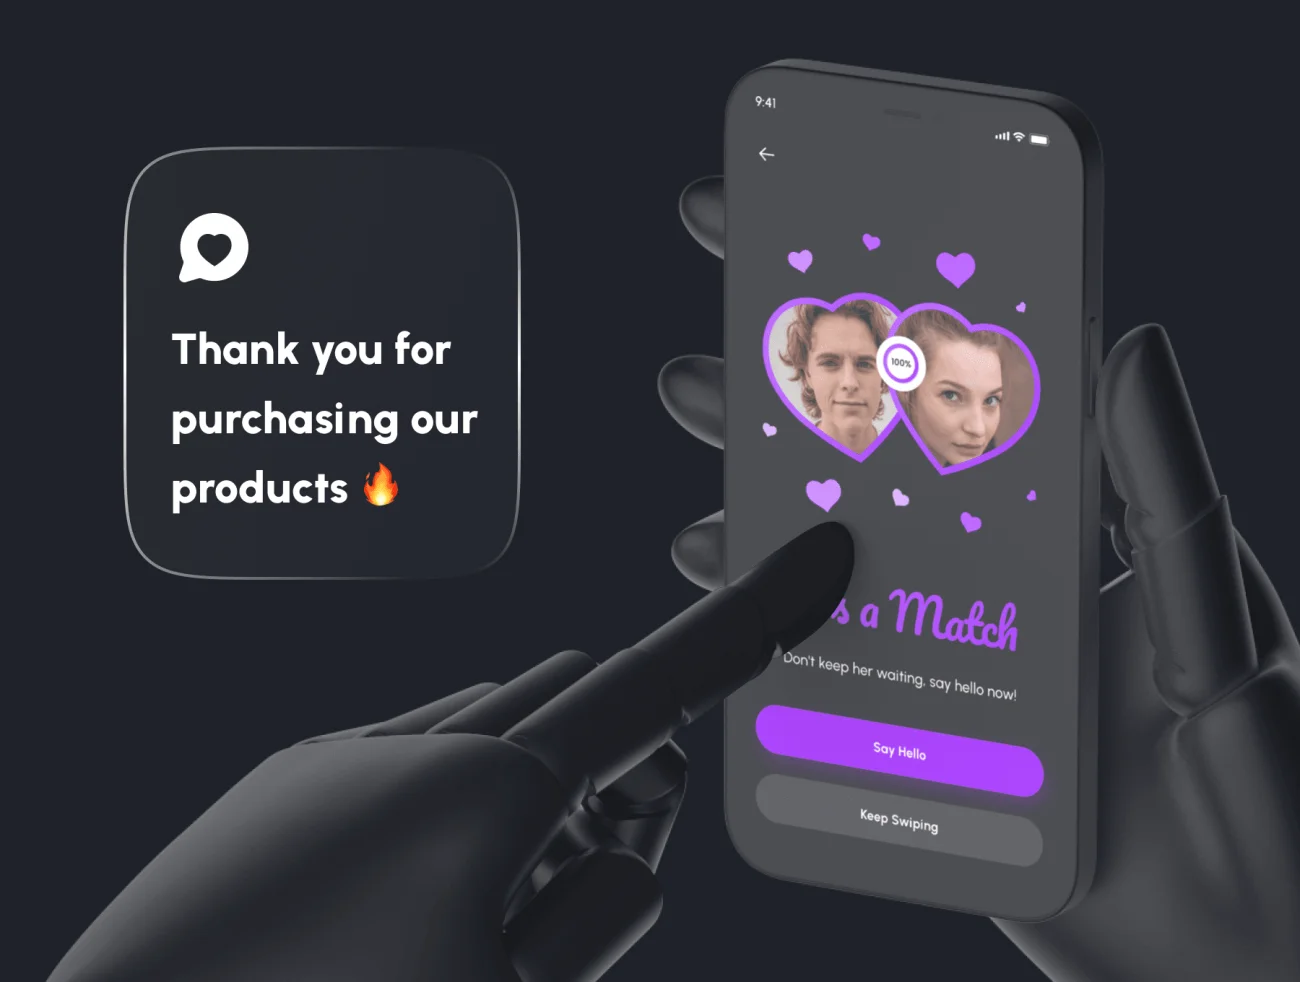 130屏紫色社交约会应用UI套件 Hume - Dating App UI Kit .figma-UI/UX、ui套件、主页、介绍、应用、社交、聊天-到位啦UI